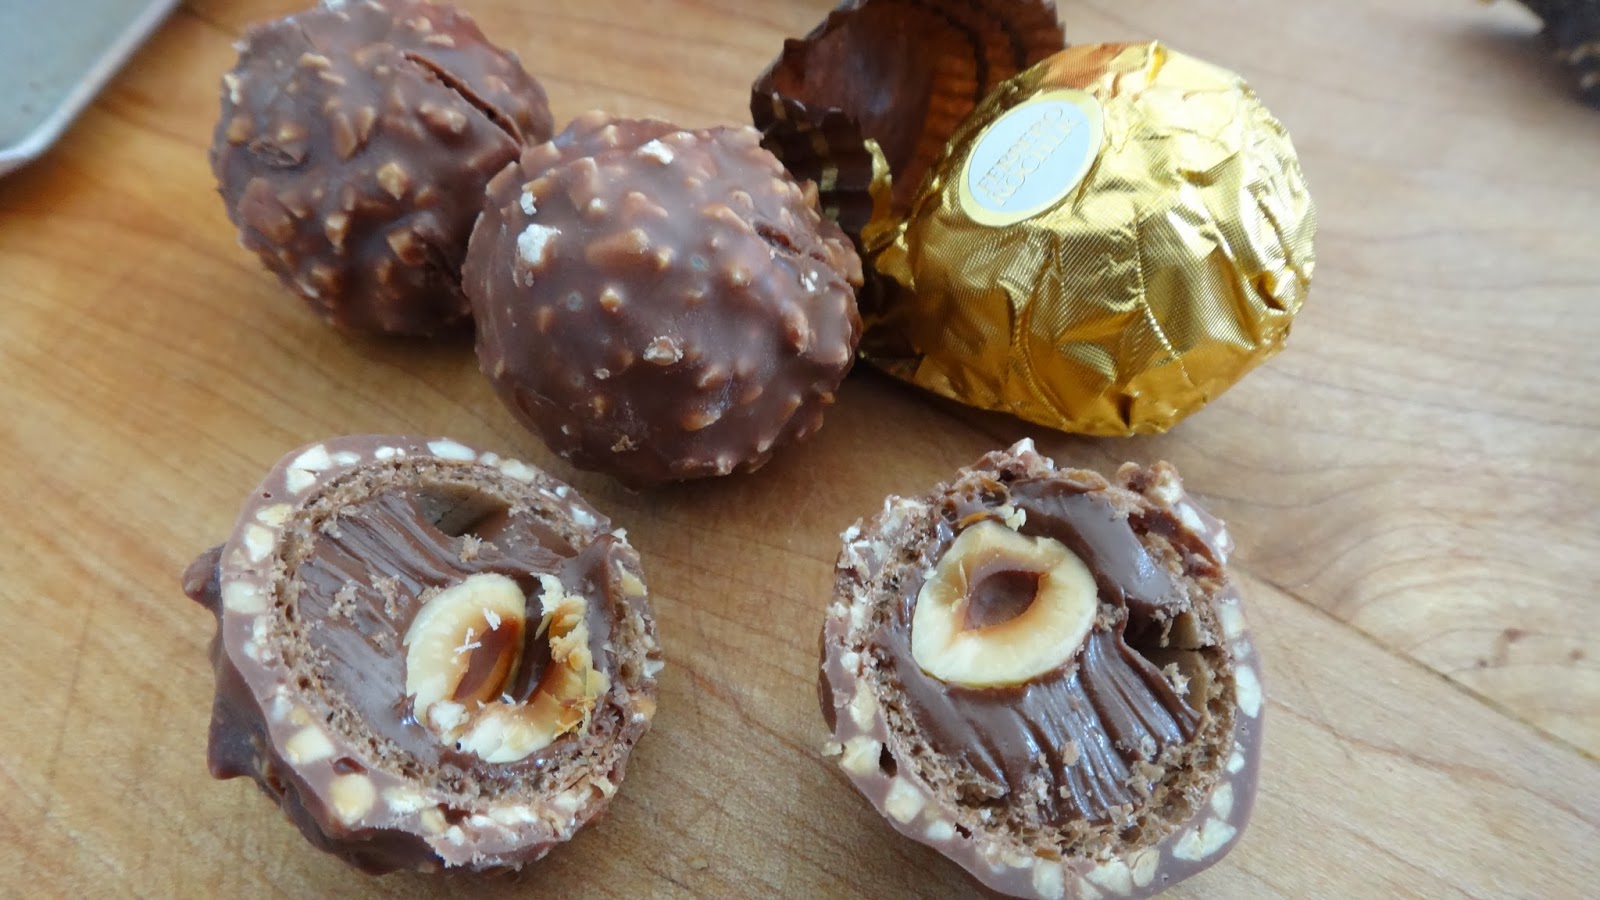 Chocolate Ferrero Rocher Cream Tart « I WANT TO COOK THAT